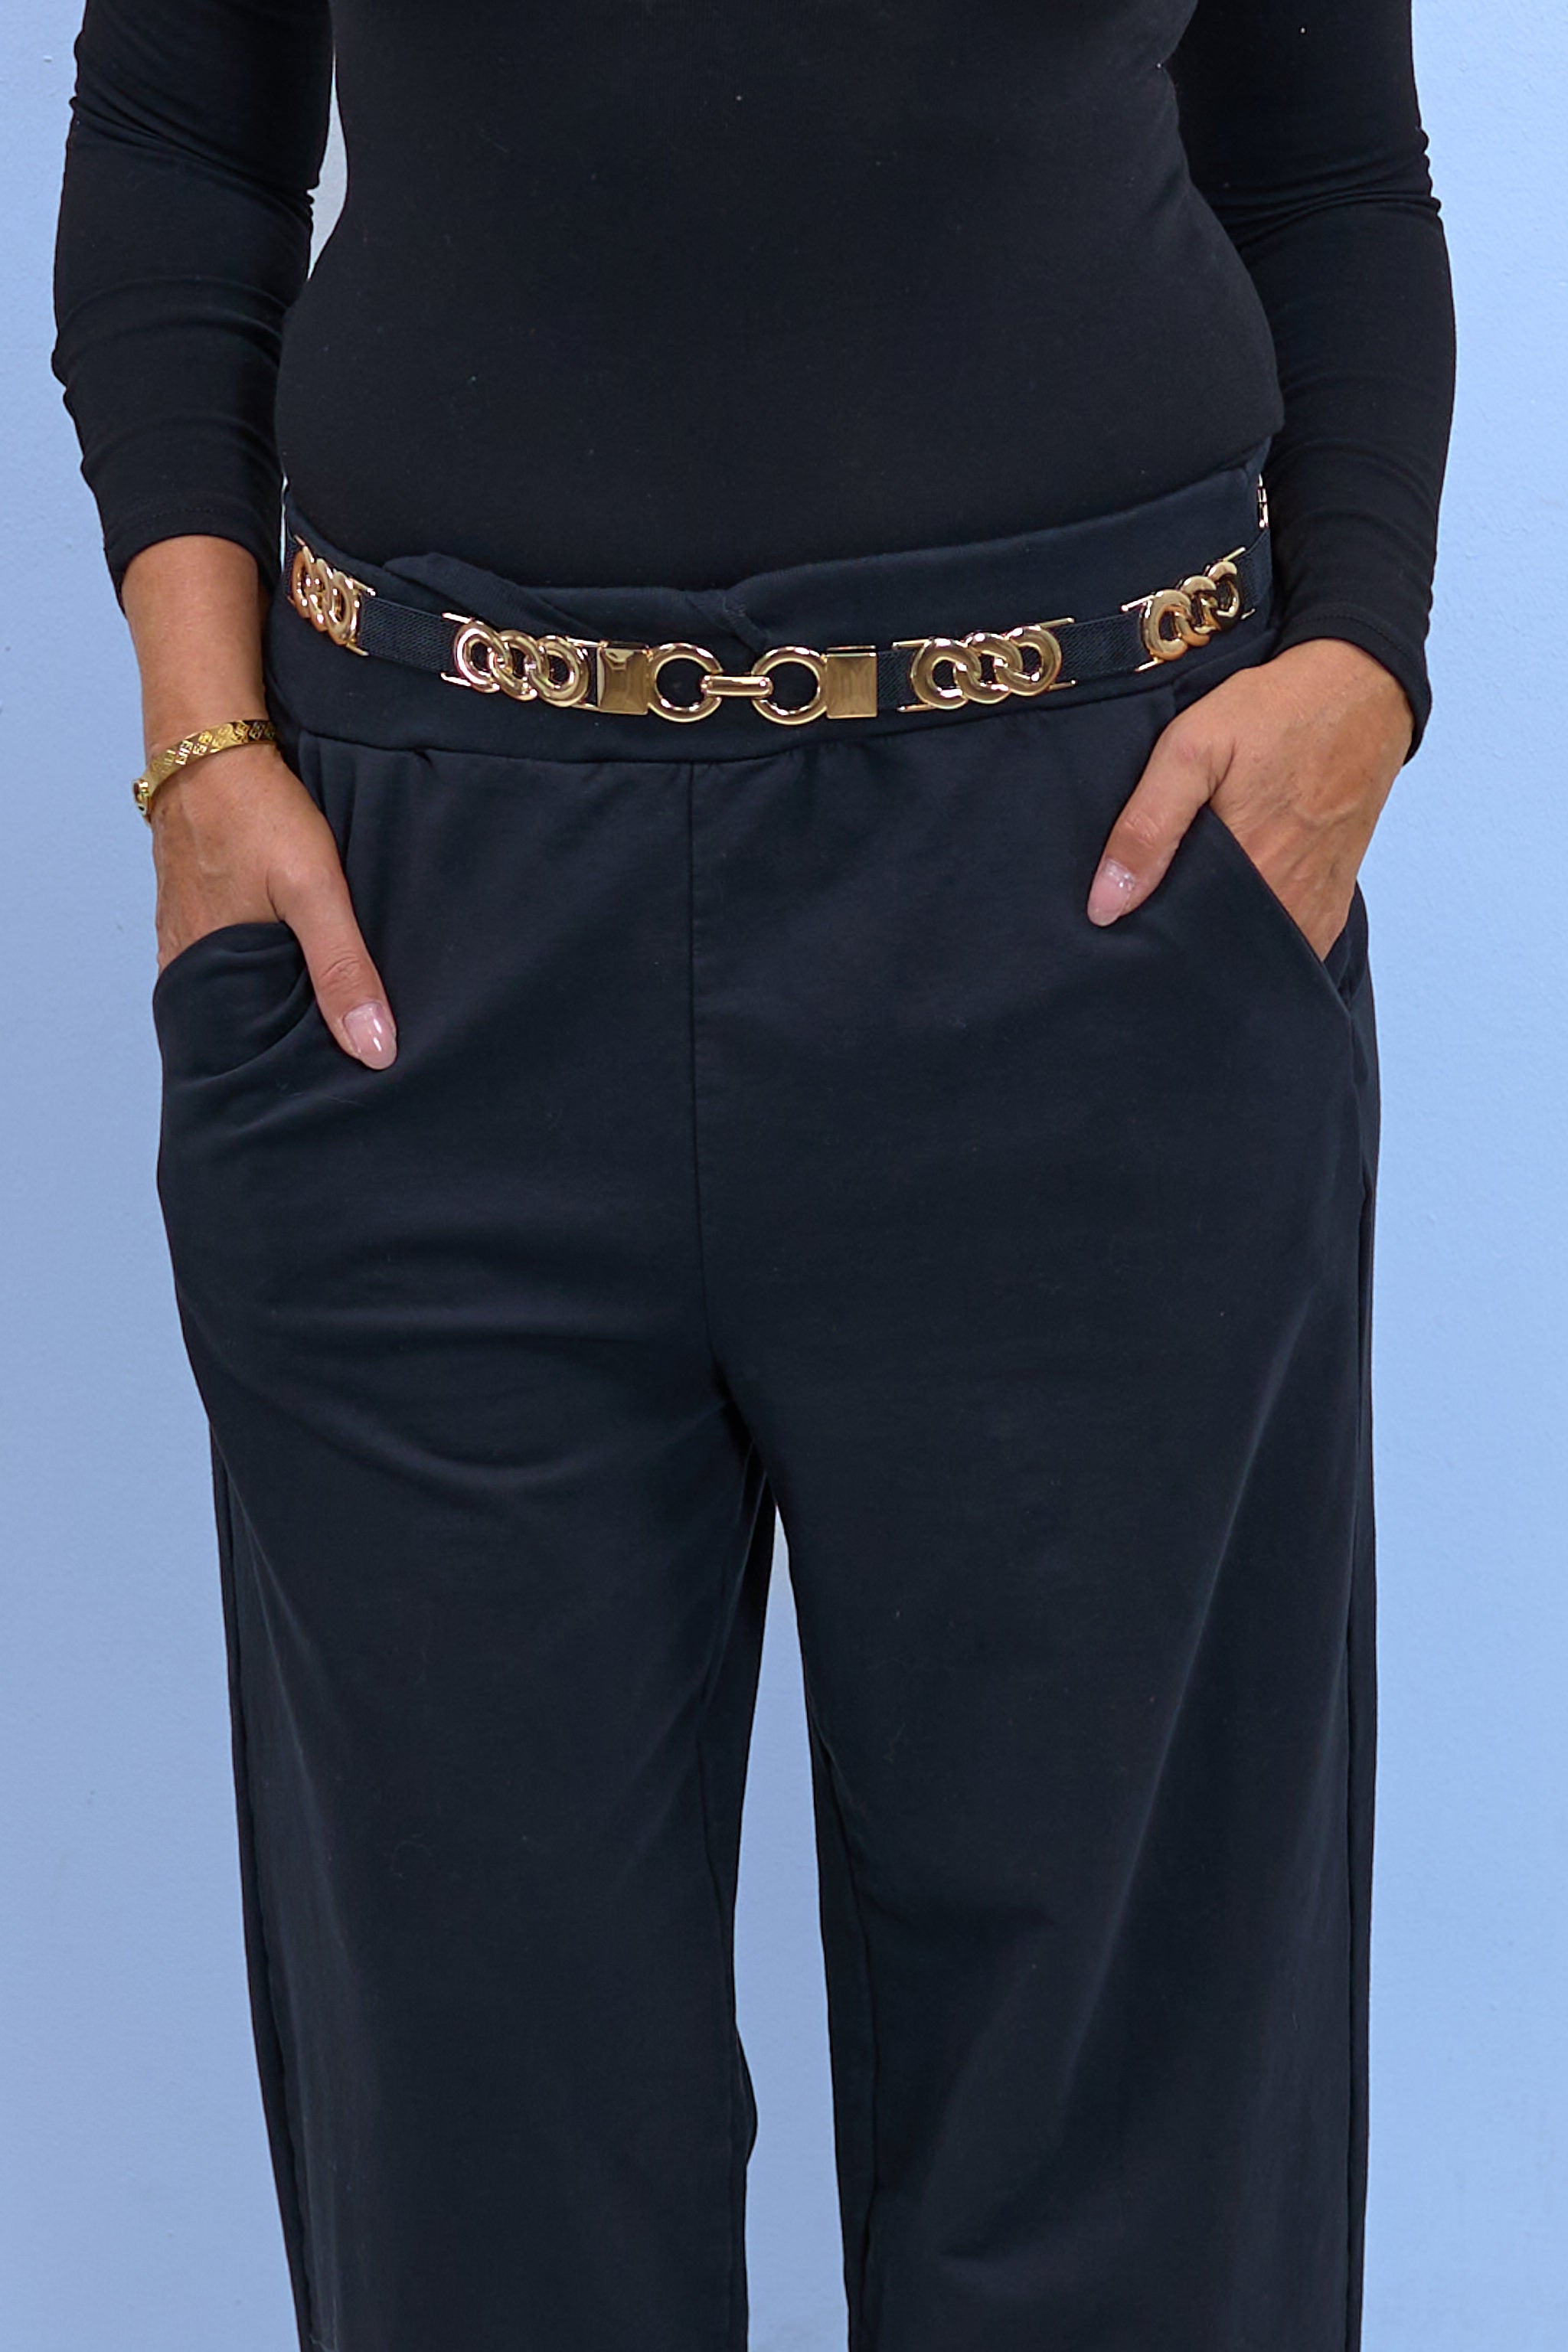 Elastic belt with great details, black-gold